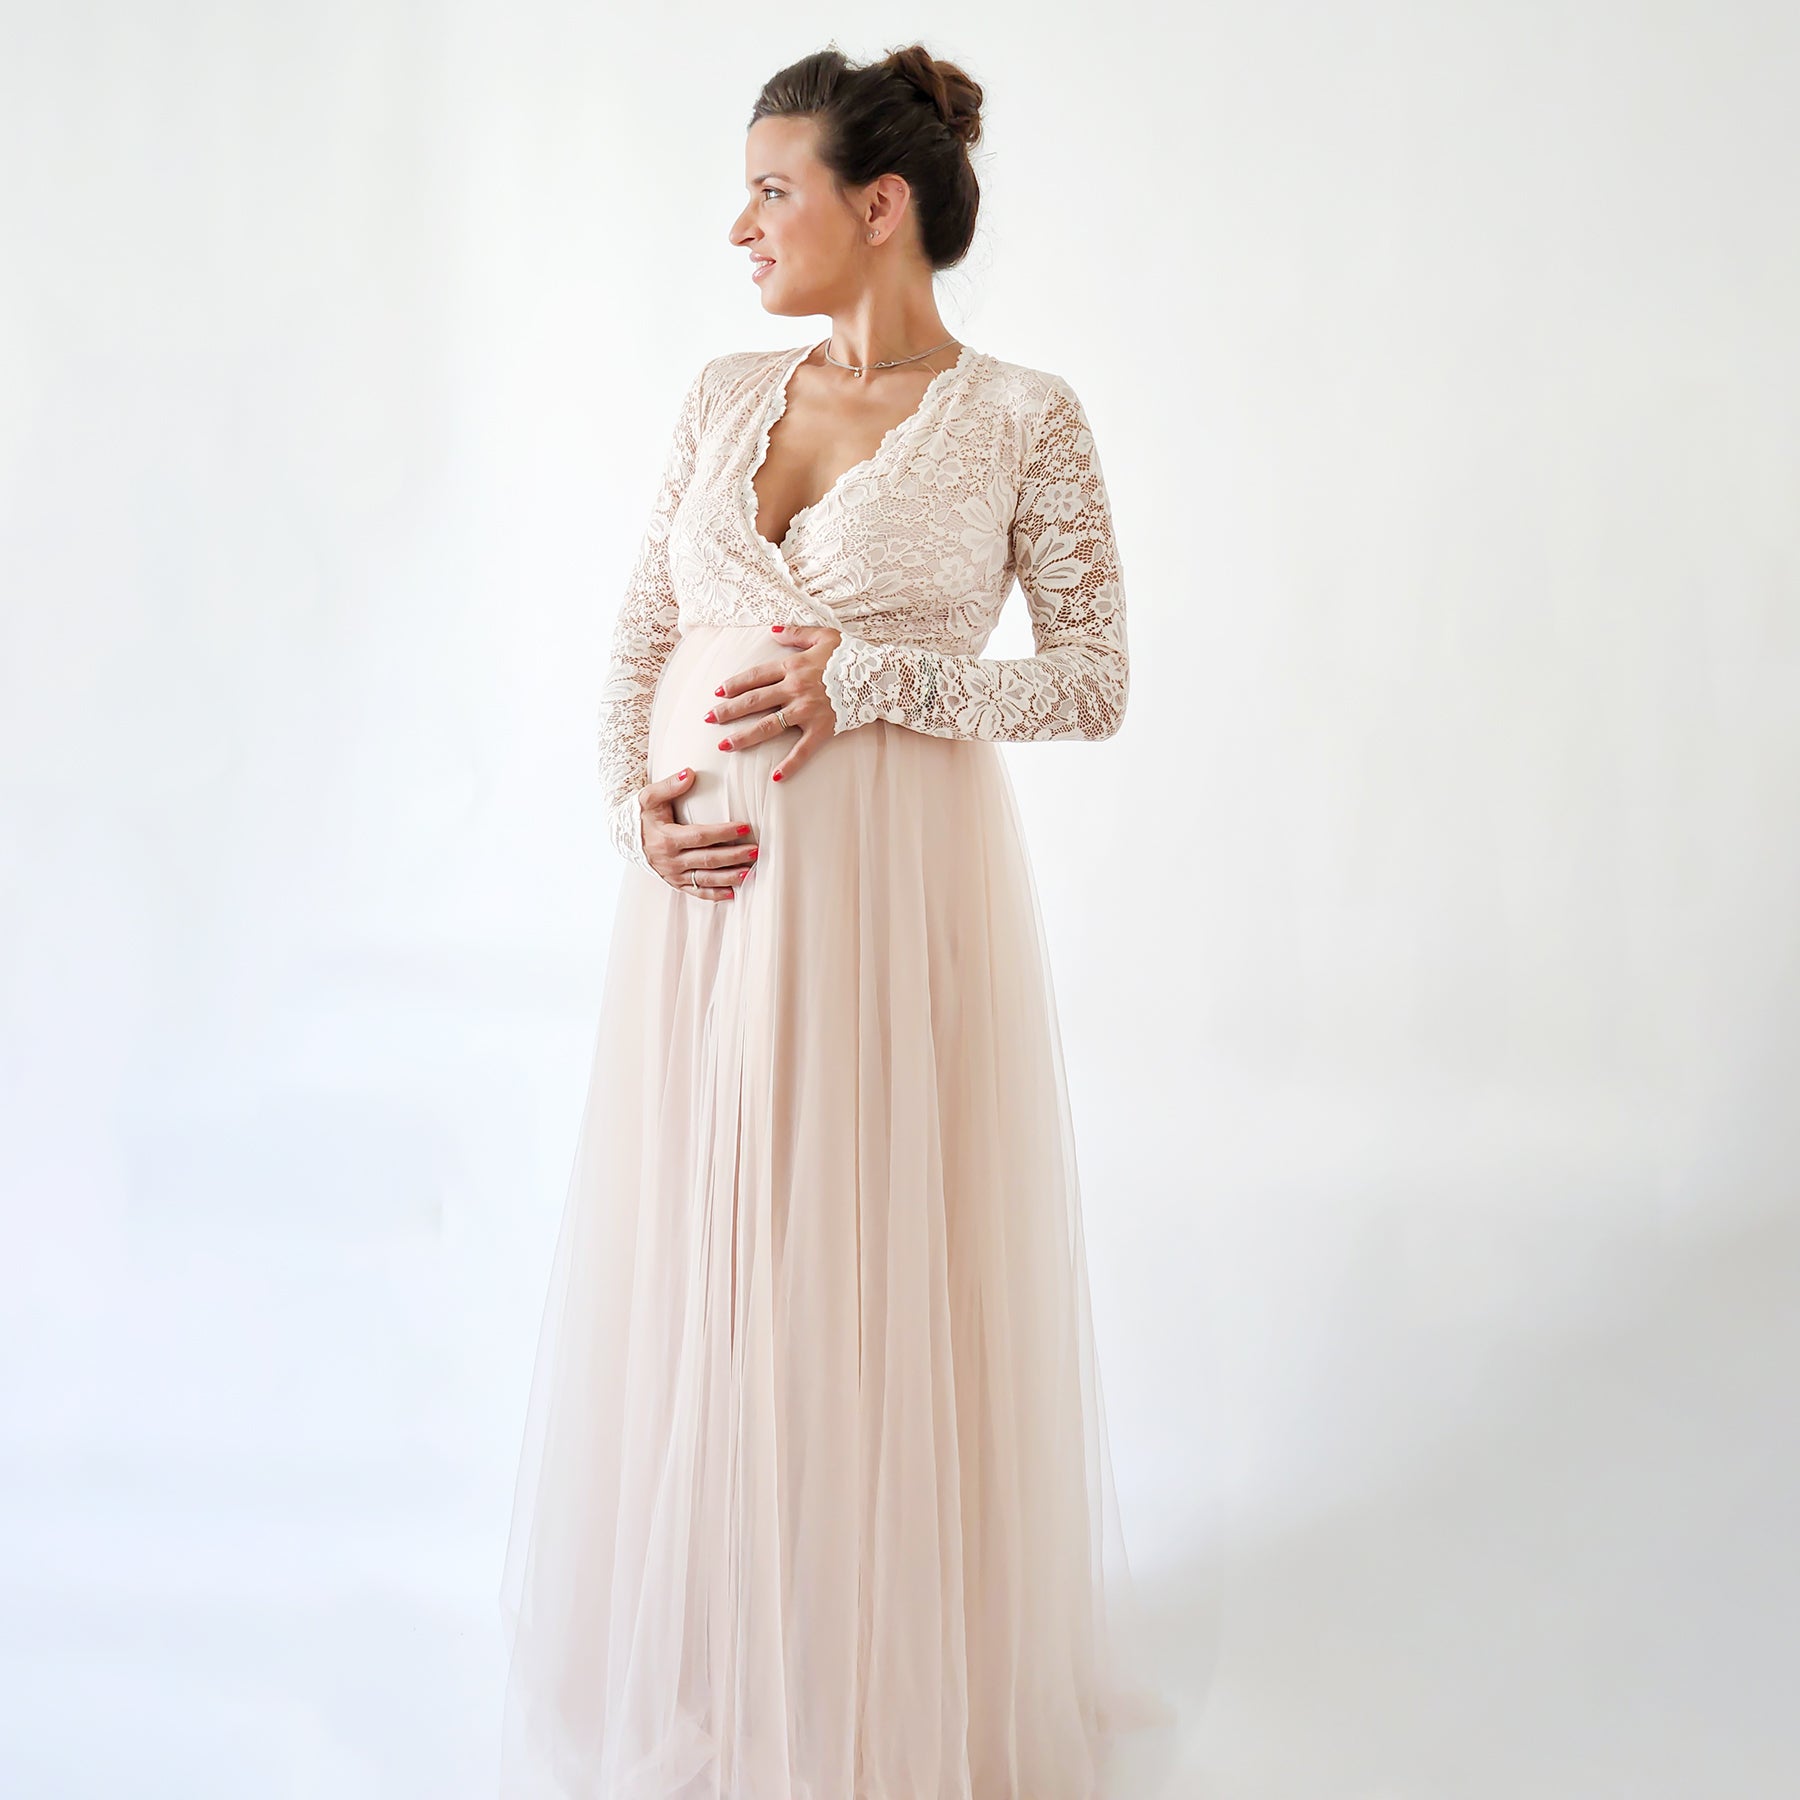 Pinkblush lined maternity dress - M